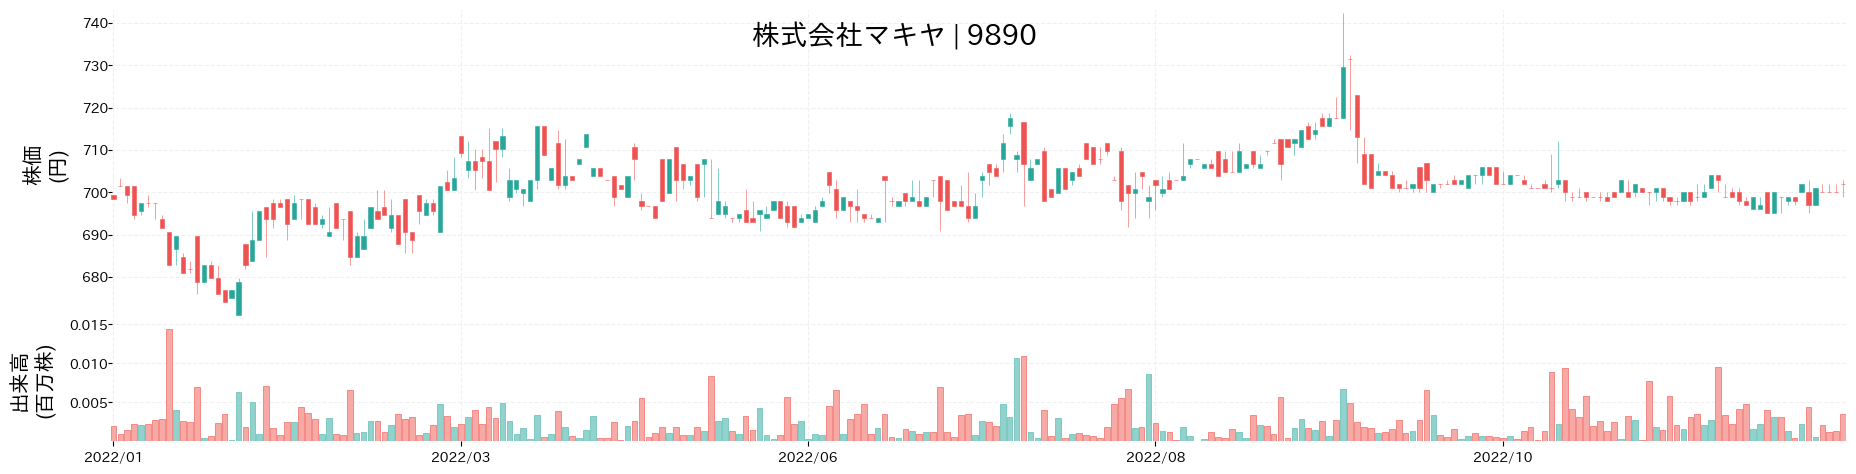 マキヤの株価推移(2022)